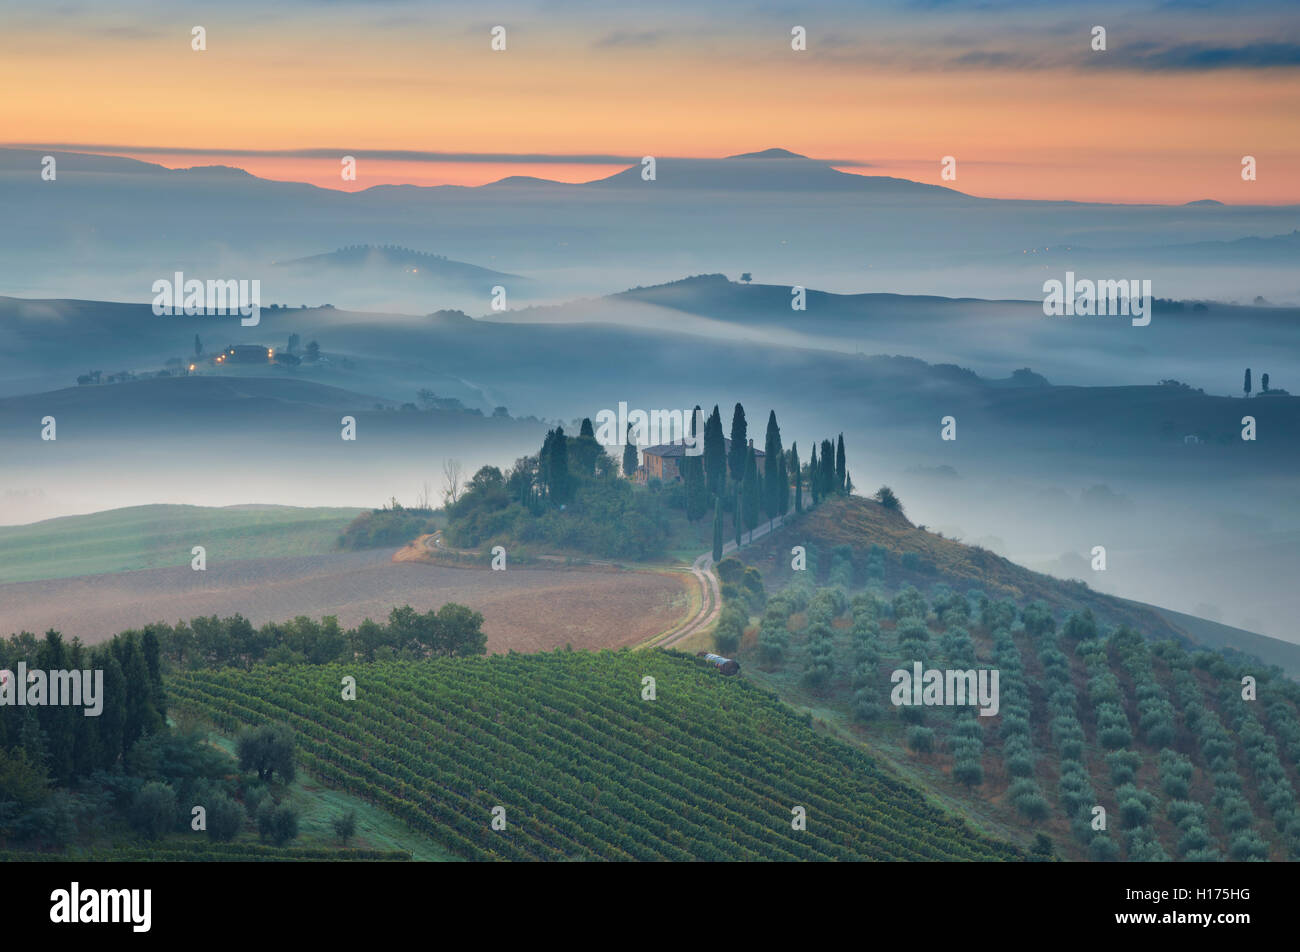 Tuscany. Image of Tuscany landscape during foggy autumn sunrise. Stock Photo